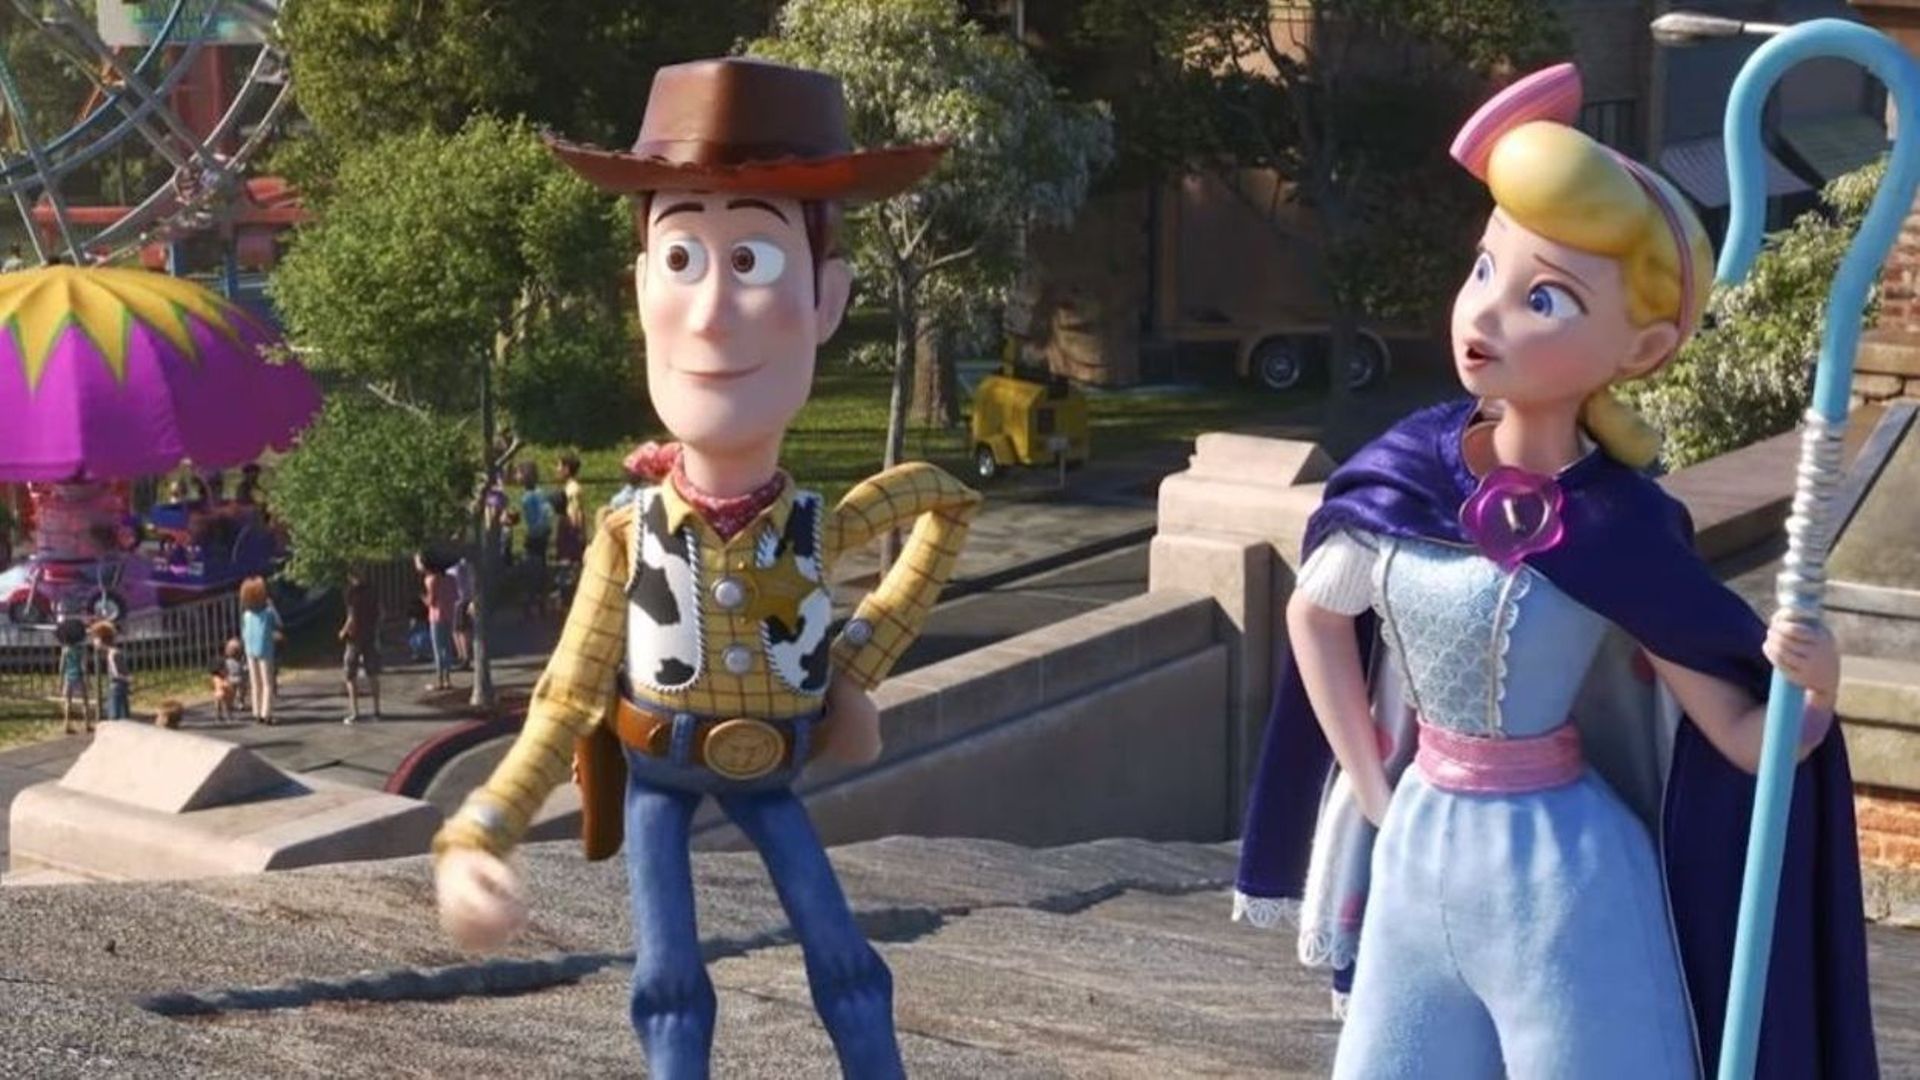 Jamel Debbouze, Angèle et Pierre Niney prêteront leur voix dans "Toy Story 4"